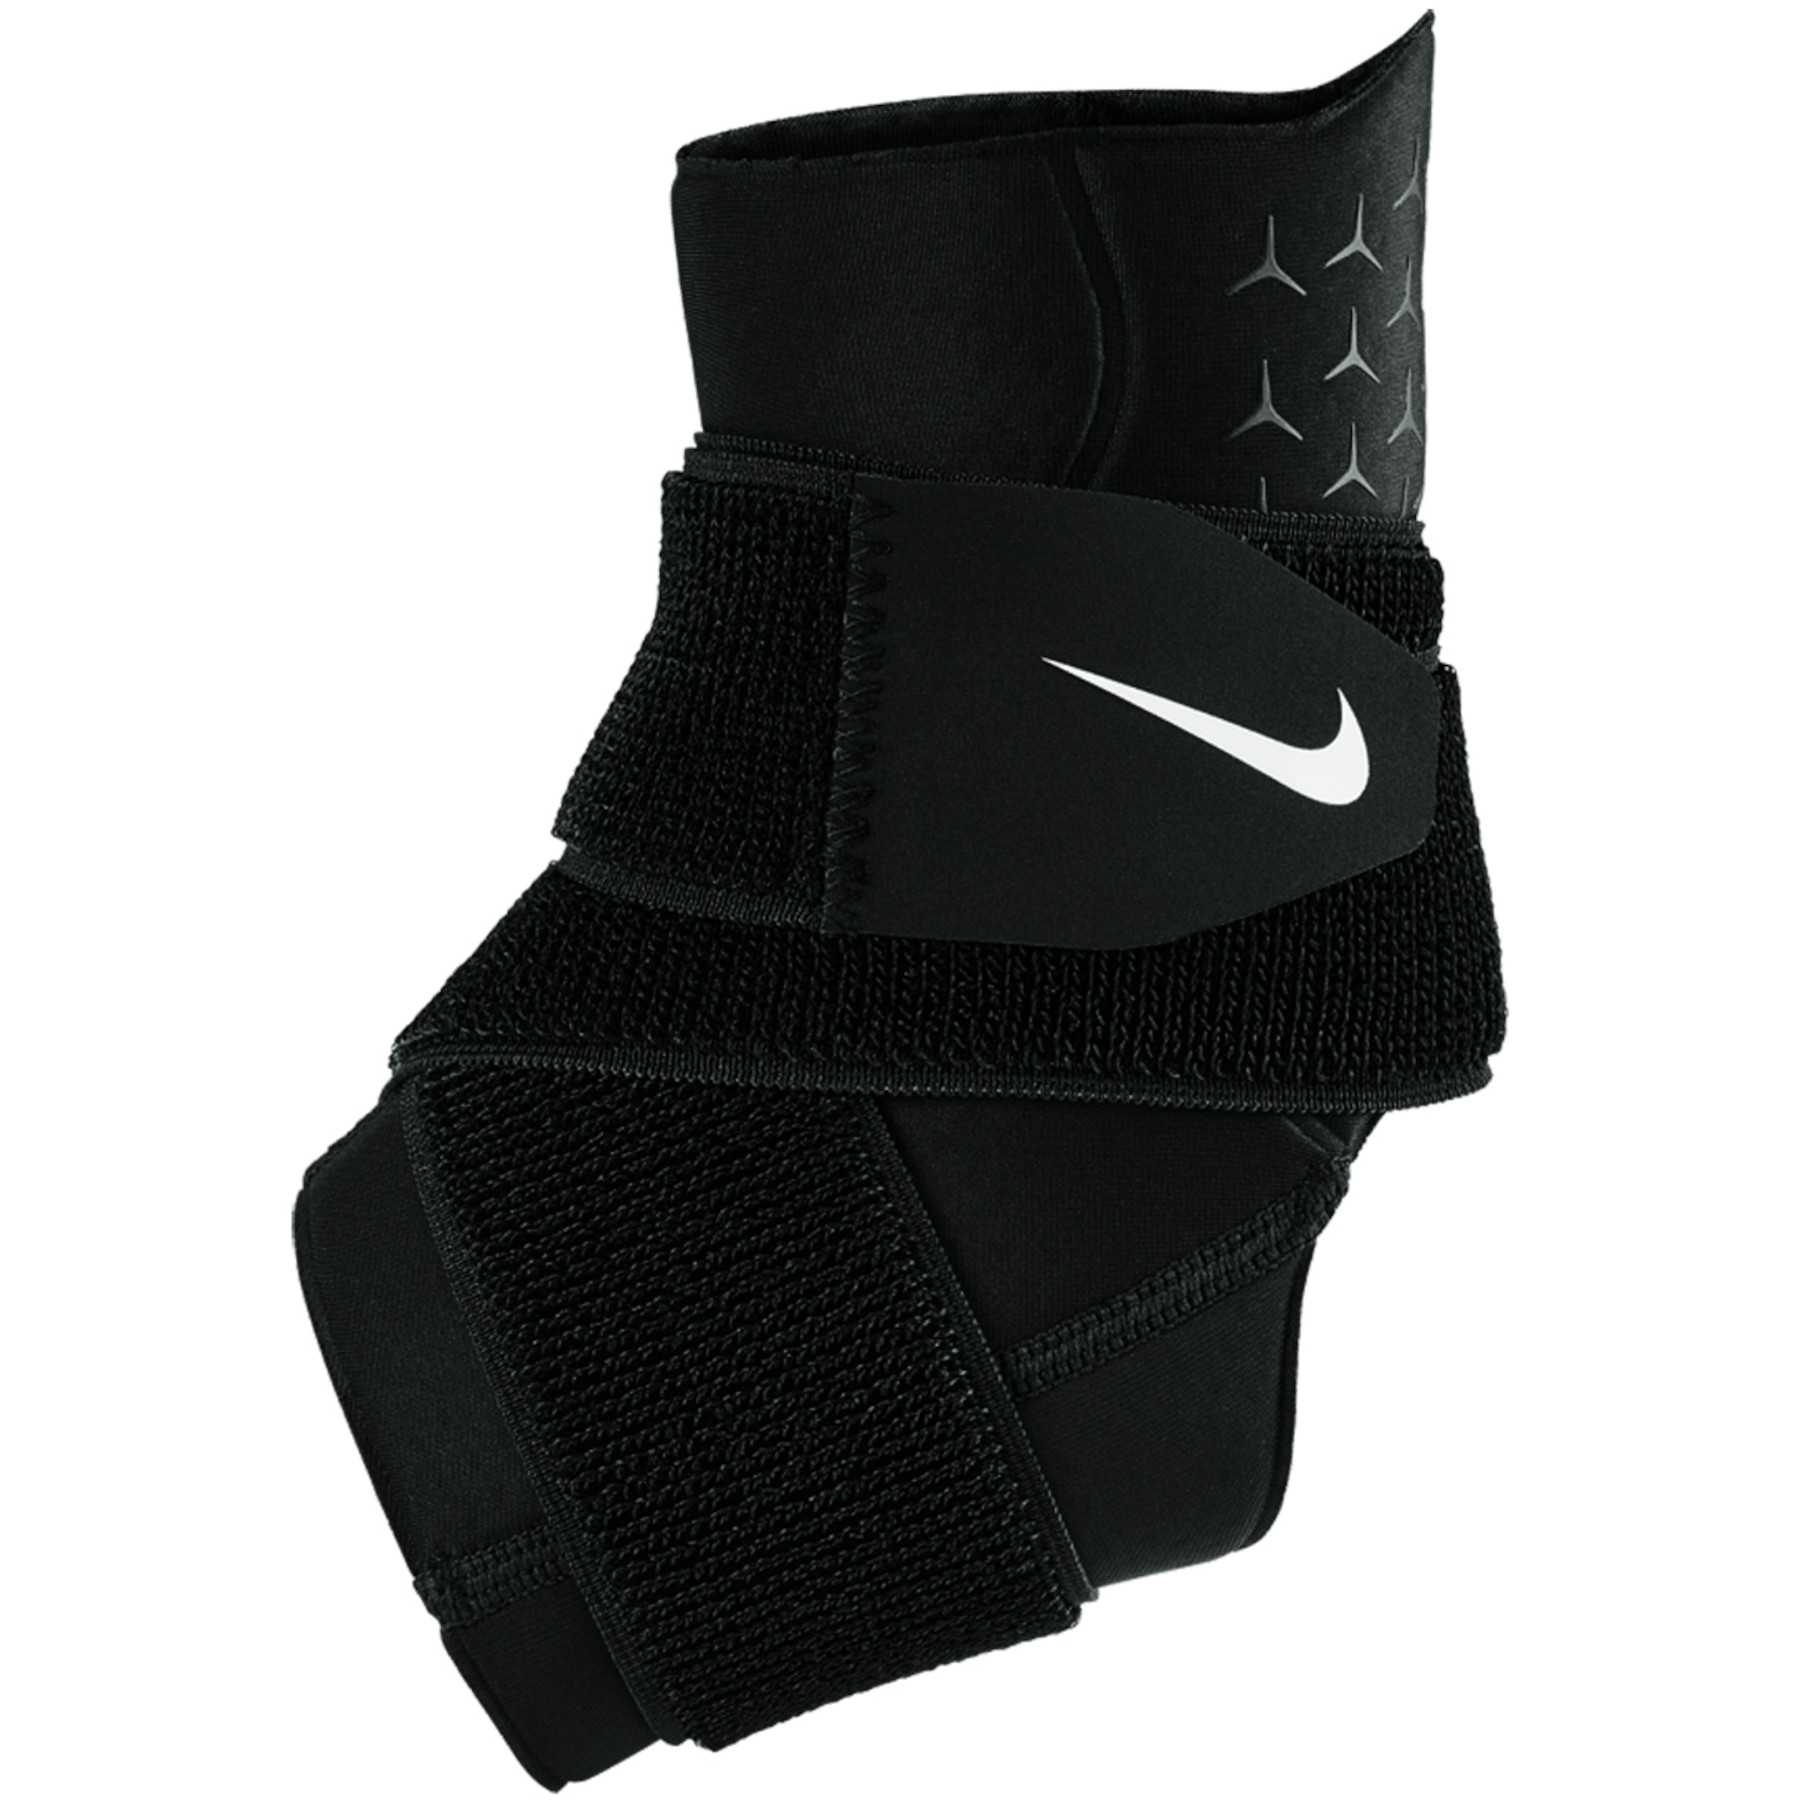 Produktbild von Nike Pro Knöchelbandage mit Klettverschluss - black/white 010